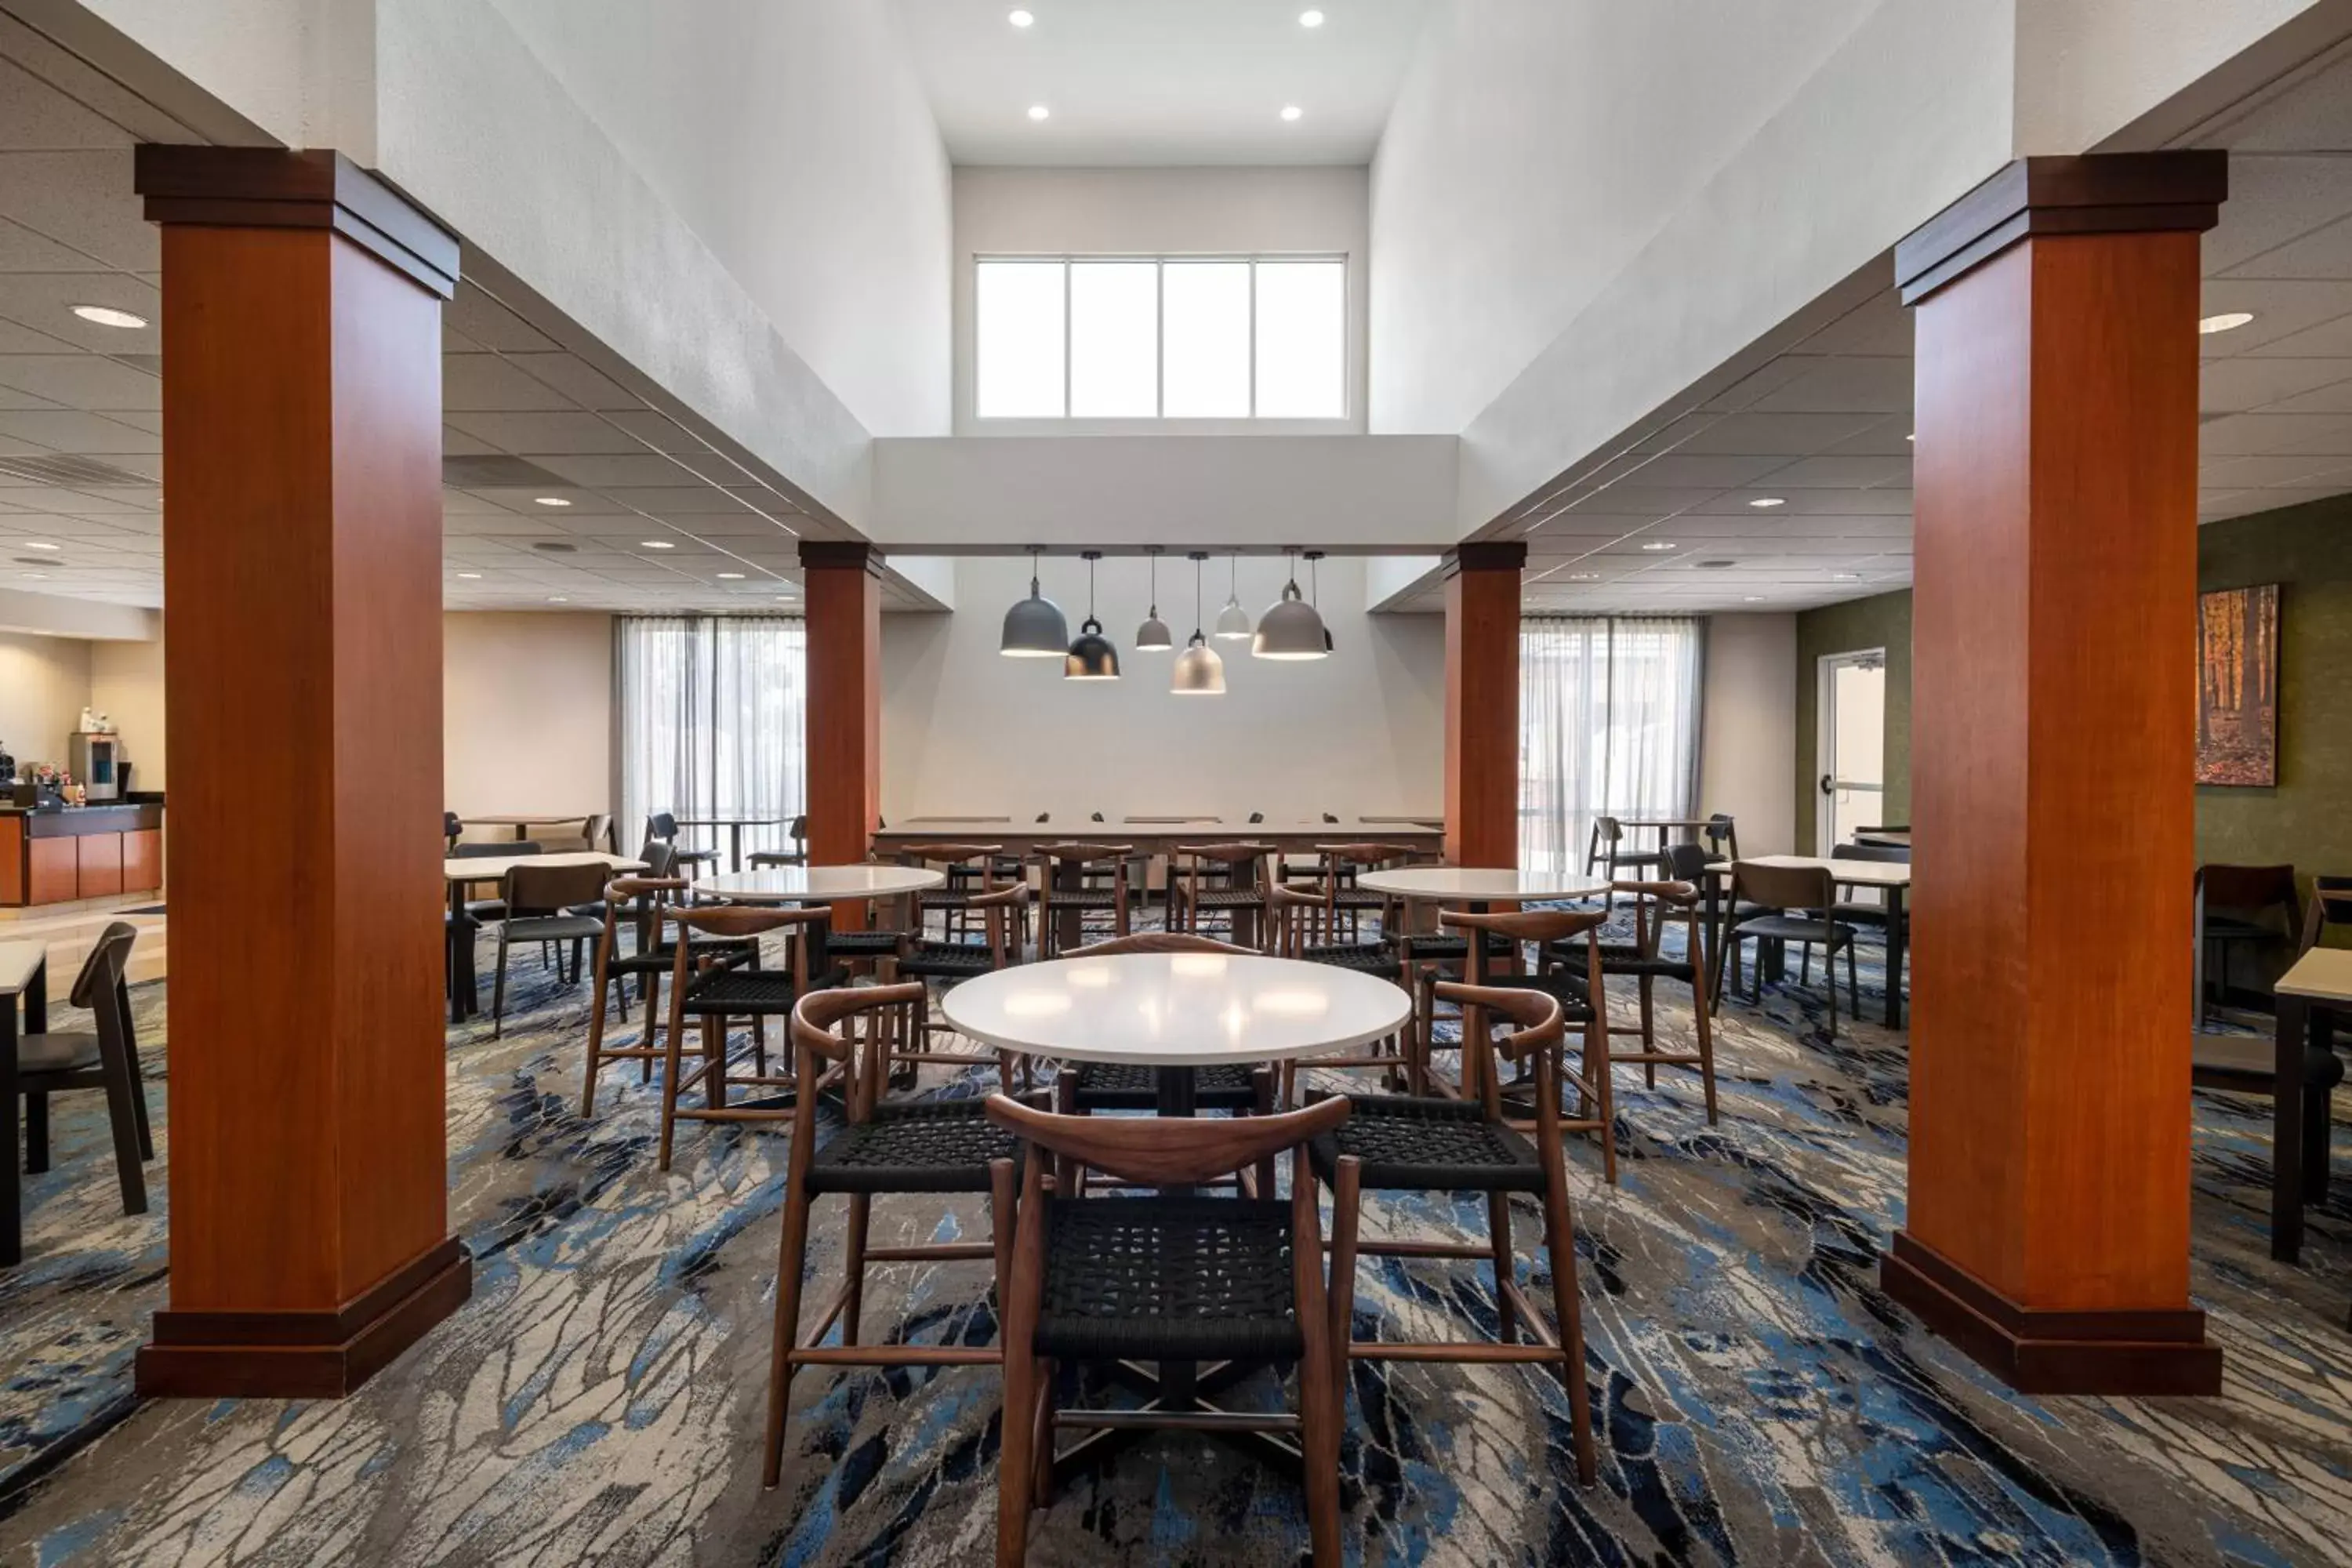 Lobby or reception in Fairfield Inn & Suites by Marriott Visalia Tulare